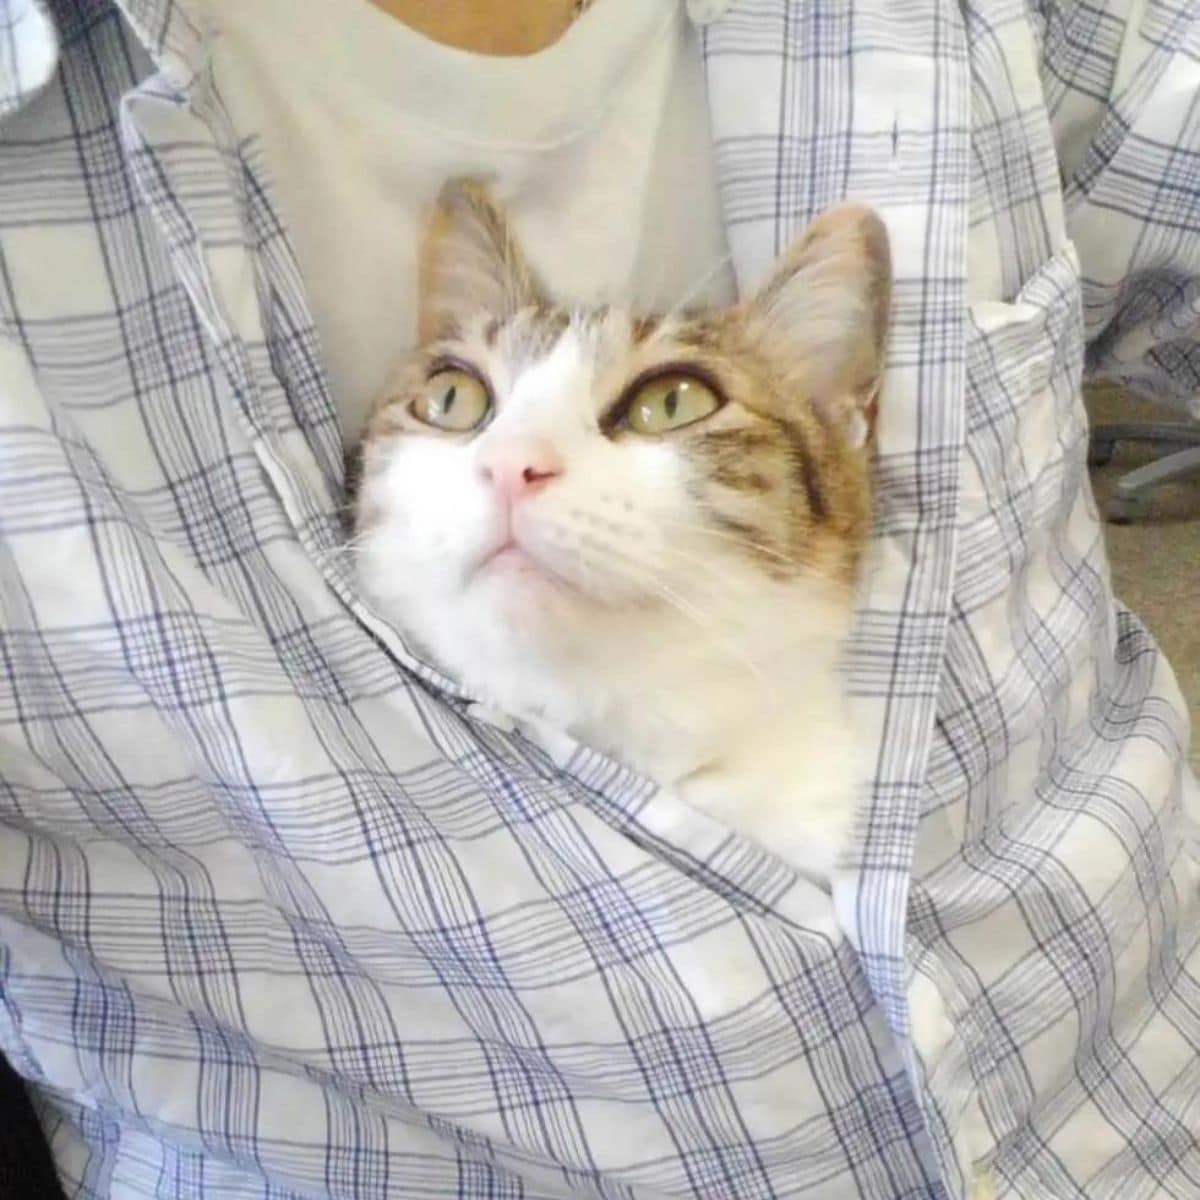 cat in shirt of employee